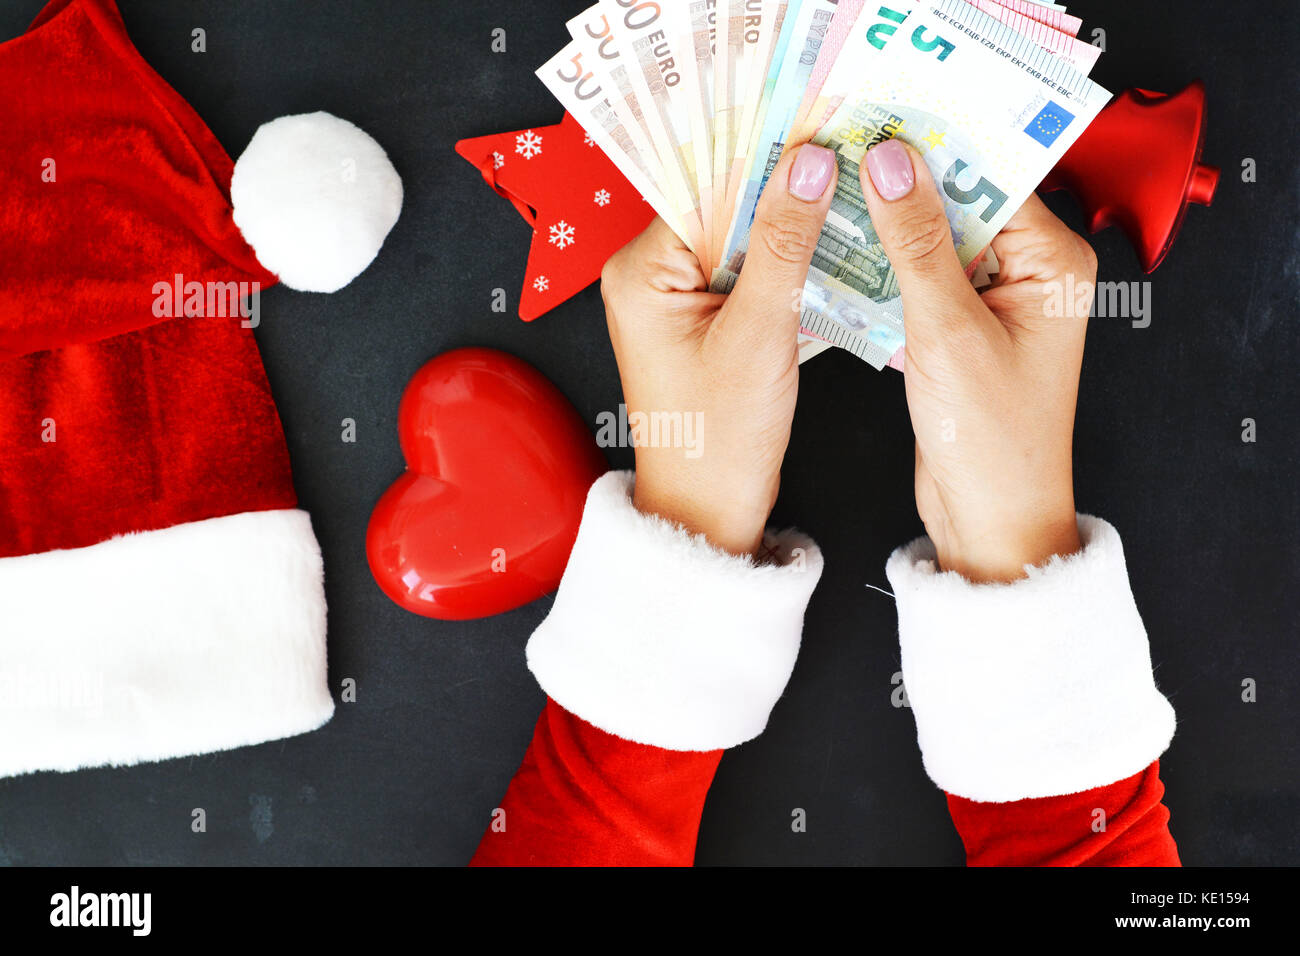 Femme avec le costume de Père Noël avec des billets en euros en espèces, ce qui suggère des dépenses de vacances Banque D'Images